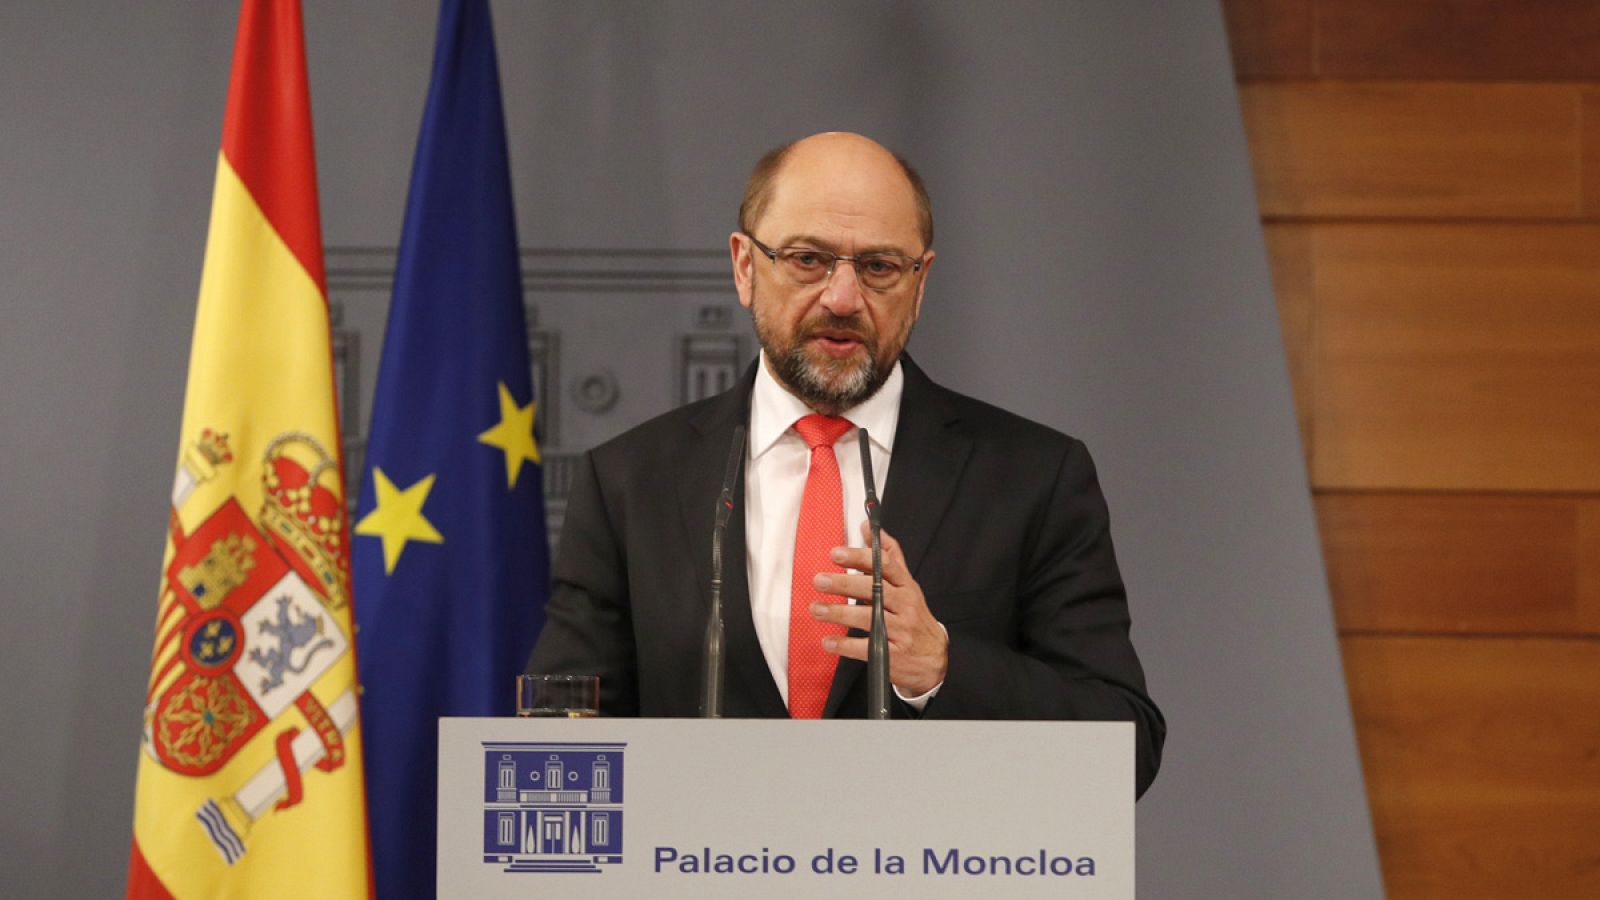 El presidente del Parlamento Europeo, Martin Schulz, durante la rueda de prensa ofrecida en el Palacio de la Moncloa